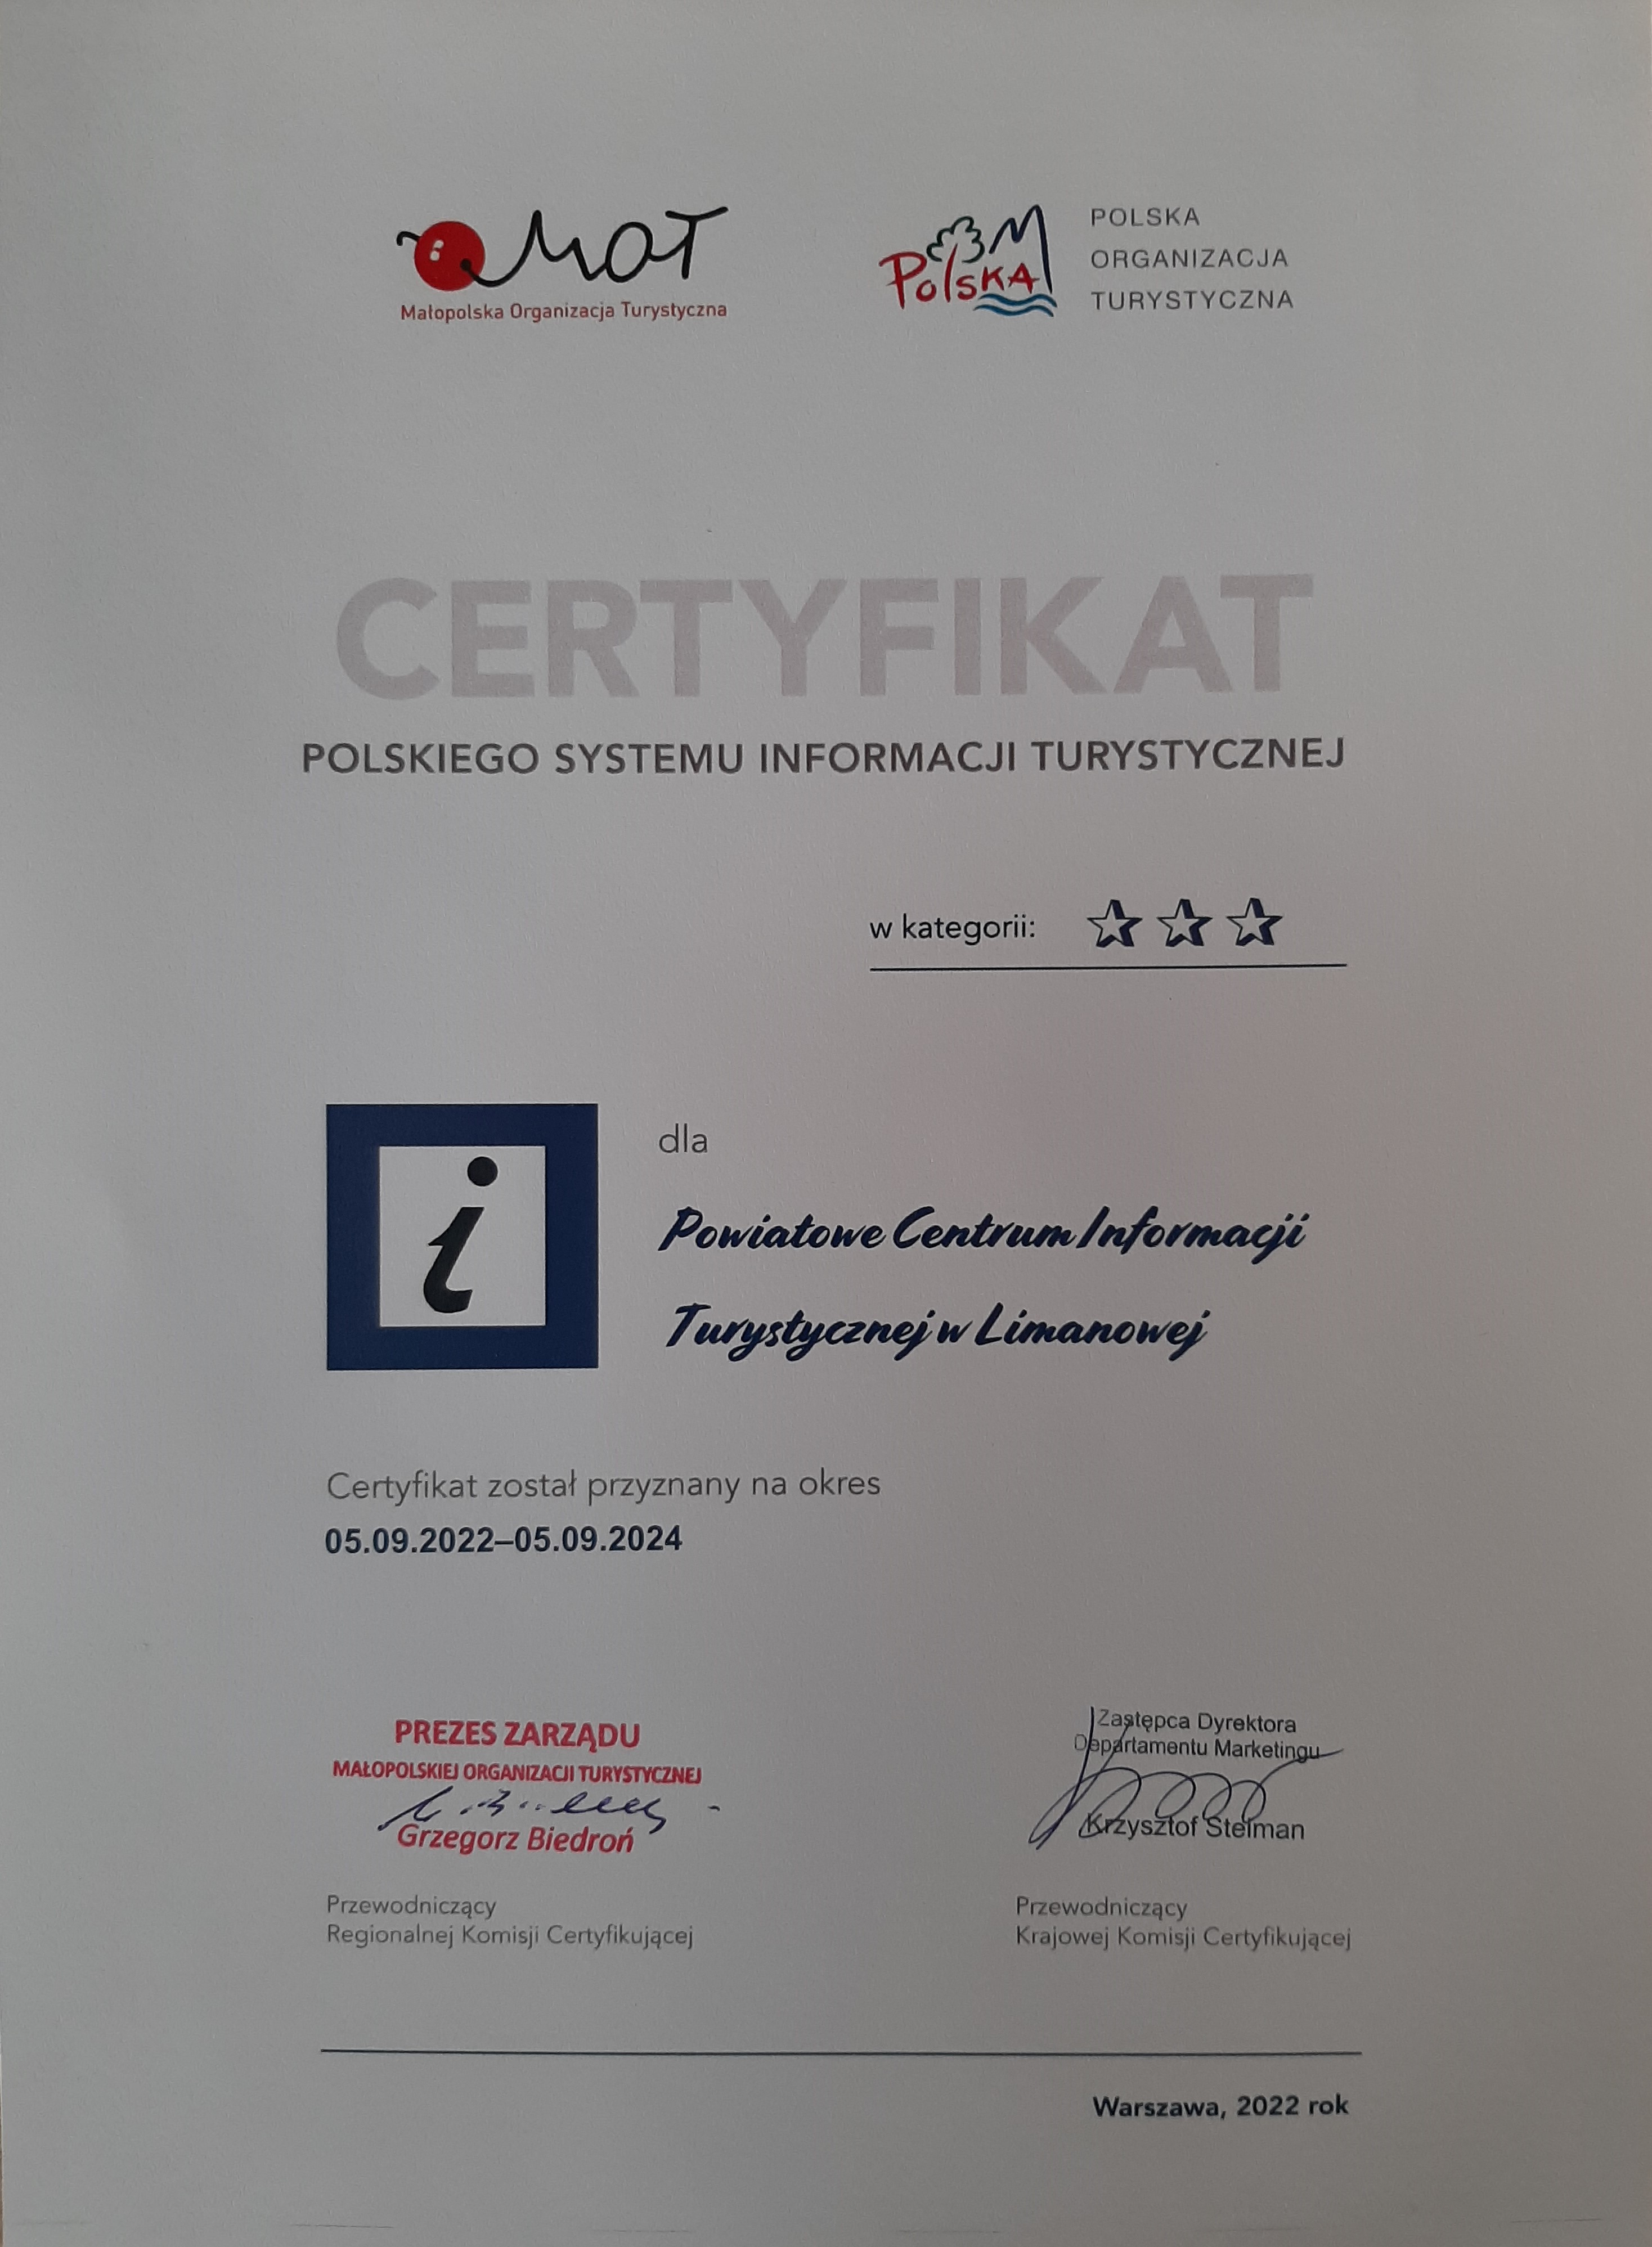 Certyfikat Polskiego Systemu Informacji Turystycznej przyznany dla Powiatiwego centrum informacji Turystycznej w Limanowej